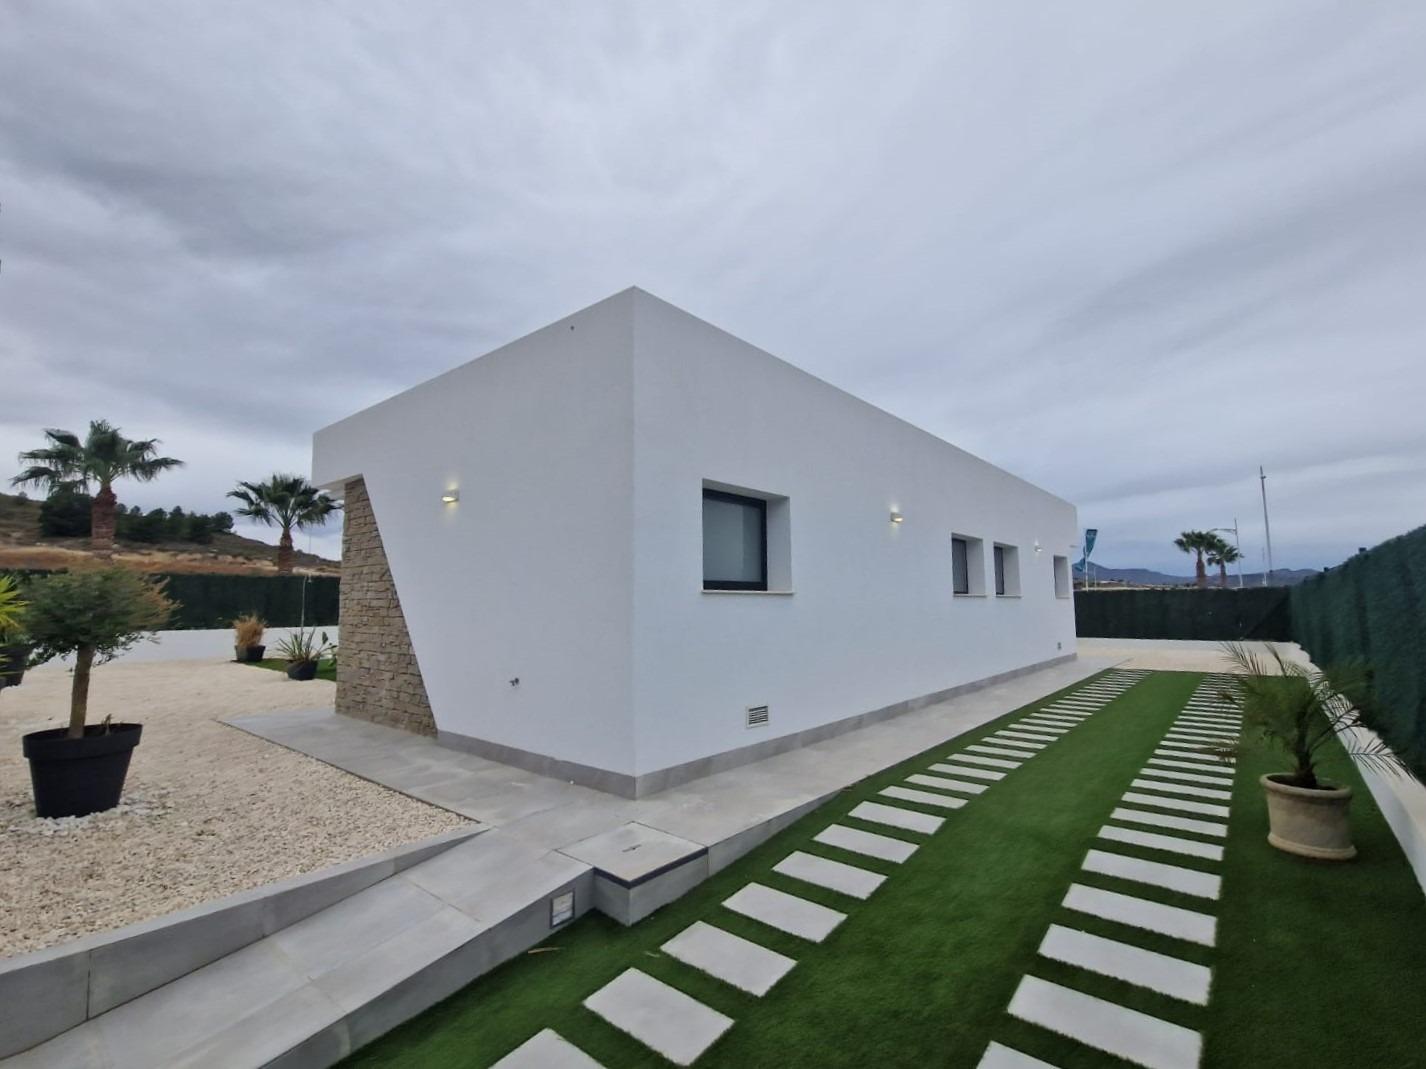 Splendid luxury villa in the Coto de los Riñales / Calasparra mountain (Murcia)